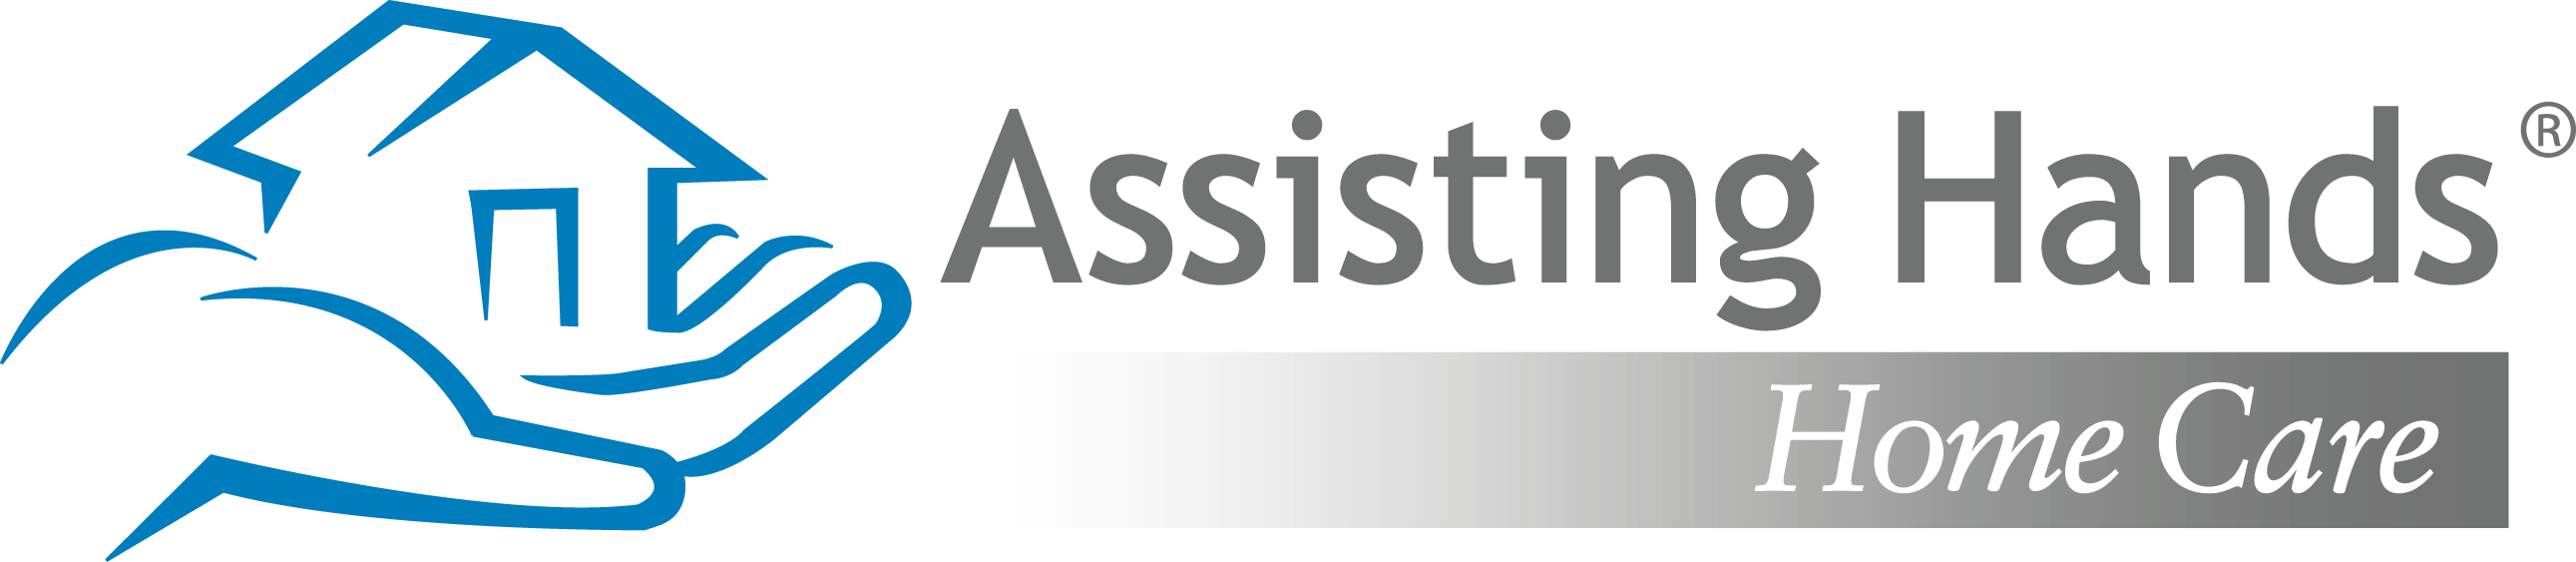 Assisting-Hands-Home-Care-logo